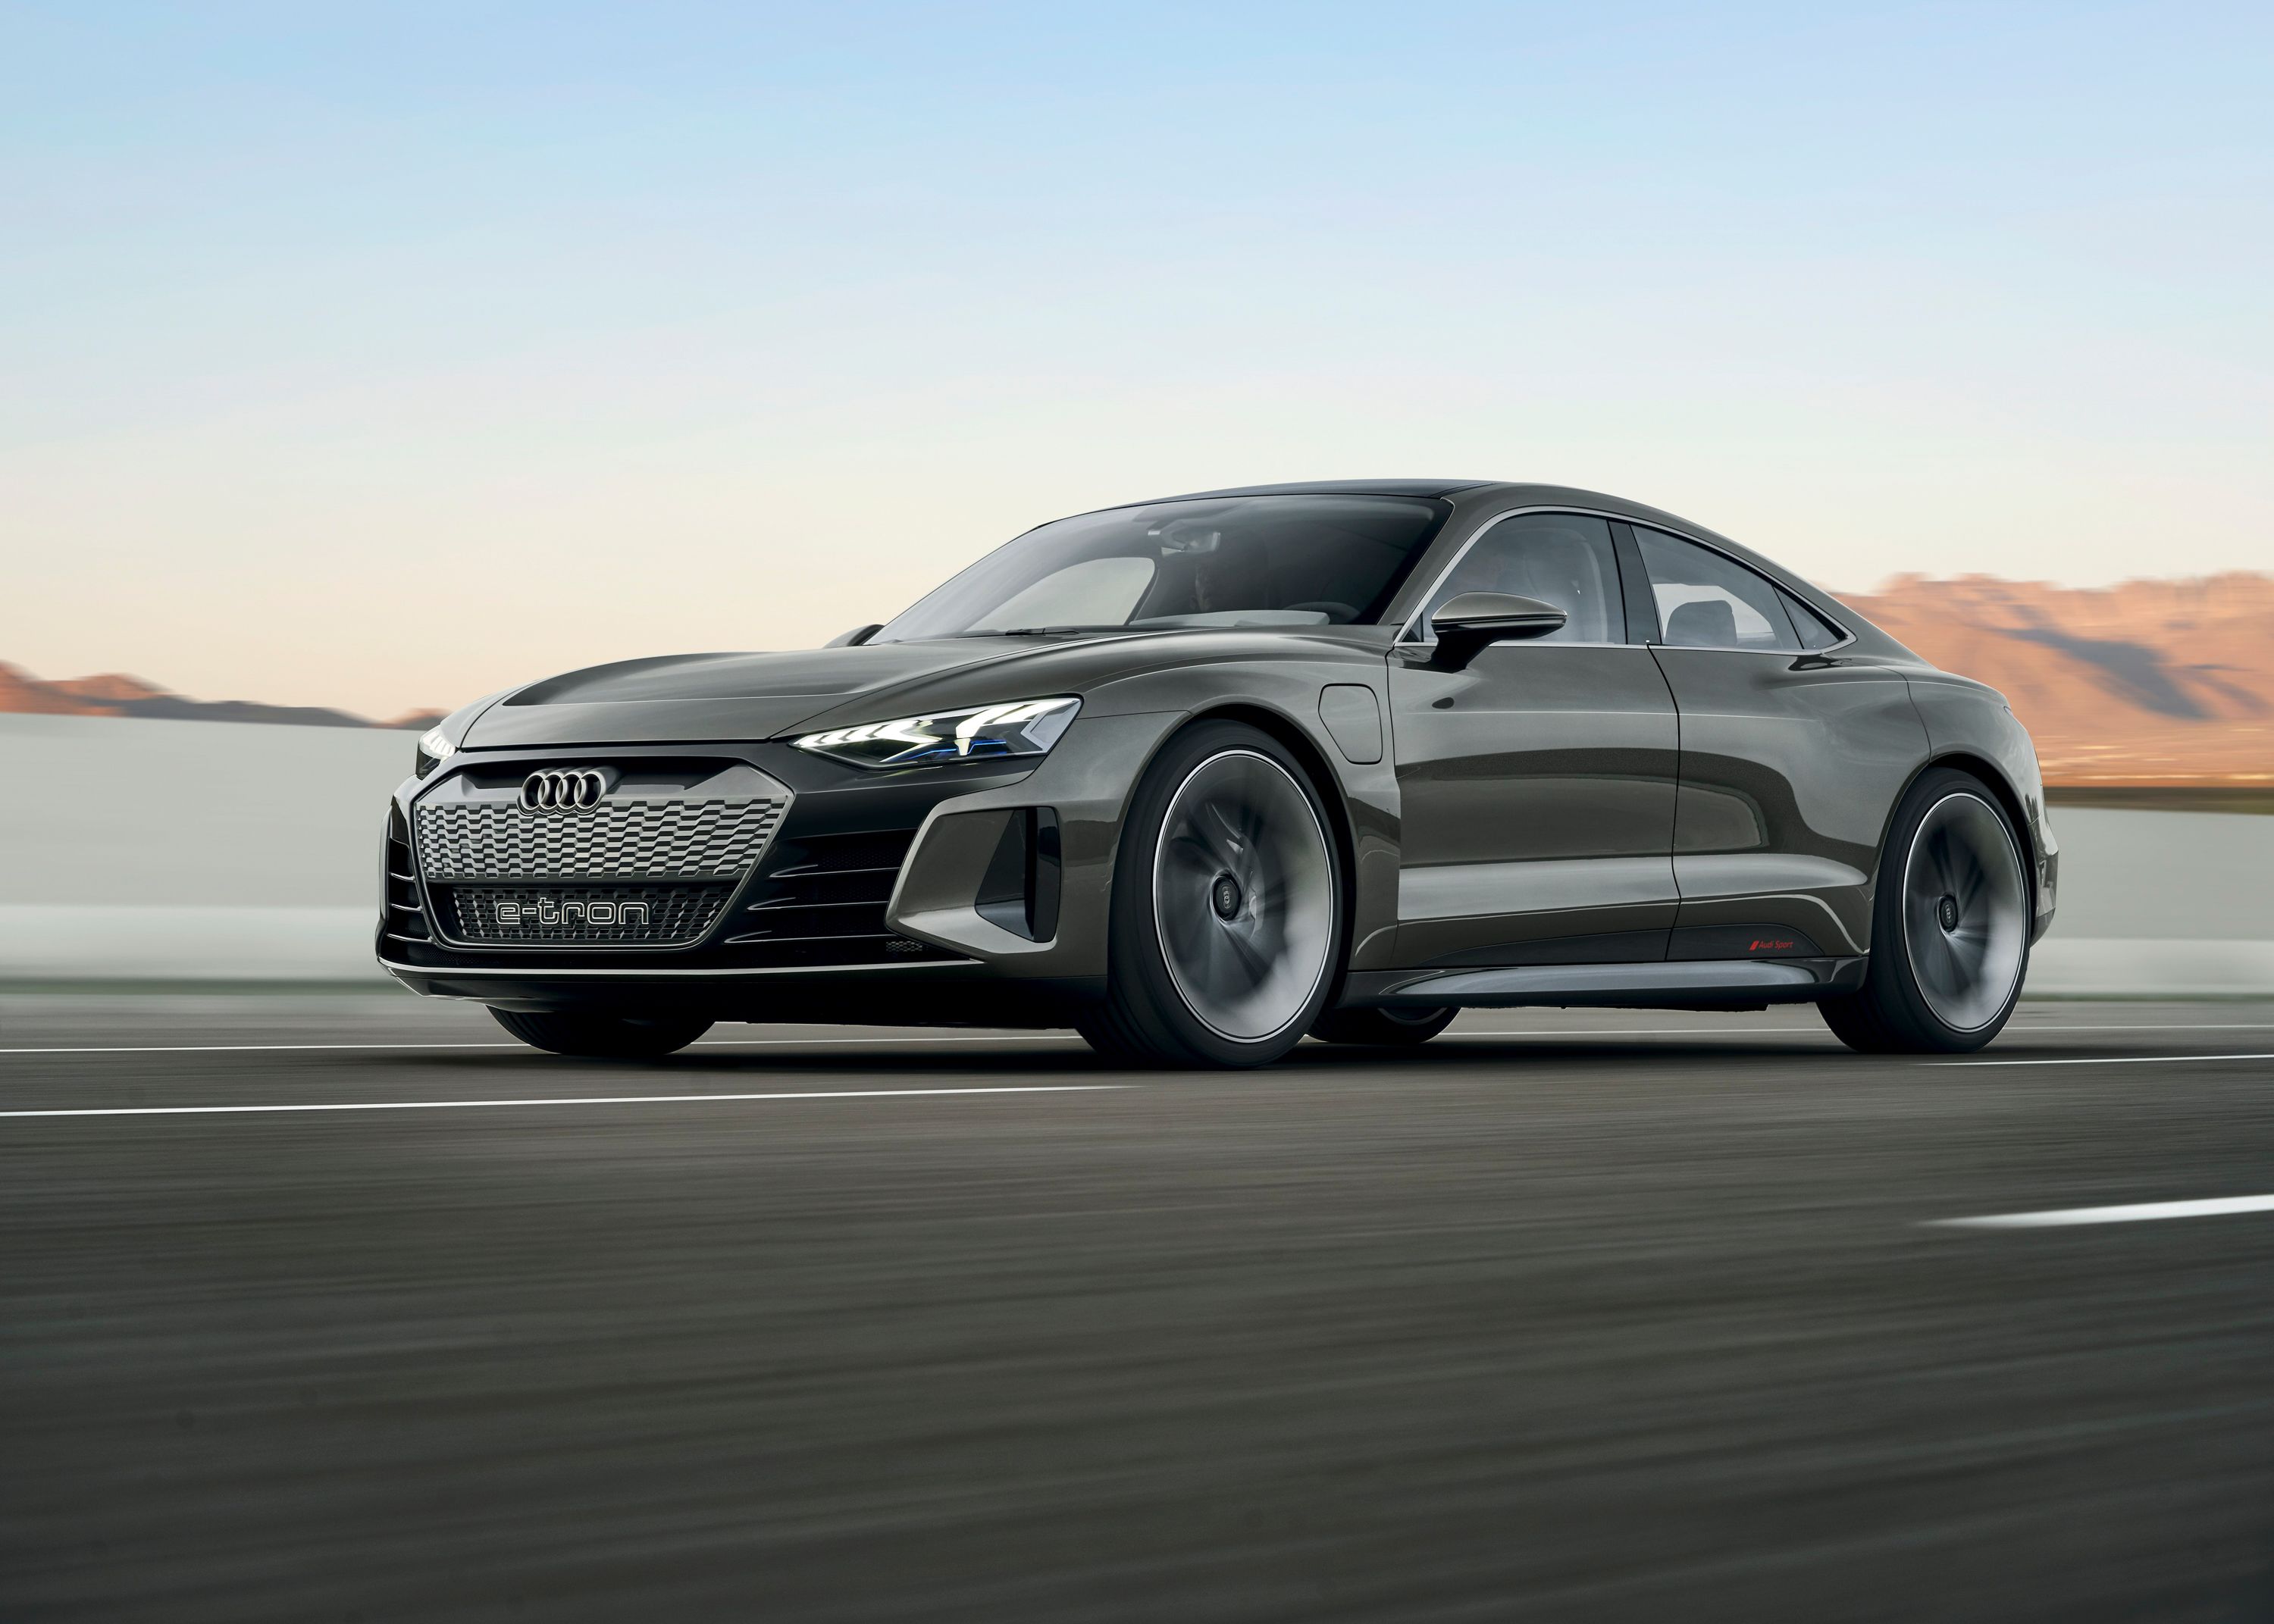 2018 Audi e-Tron GT Concept